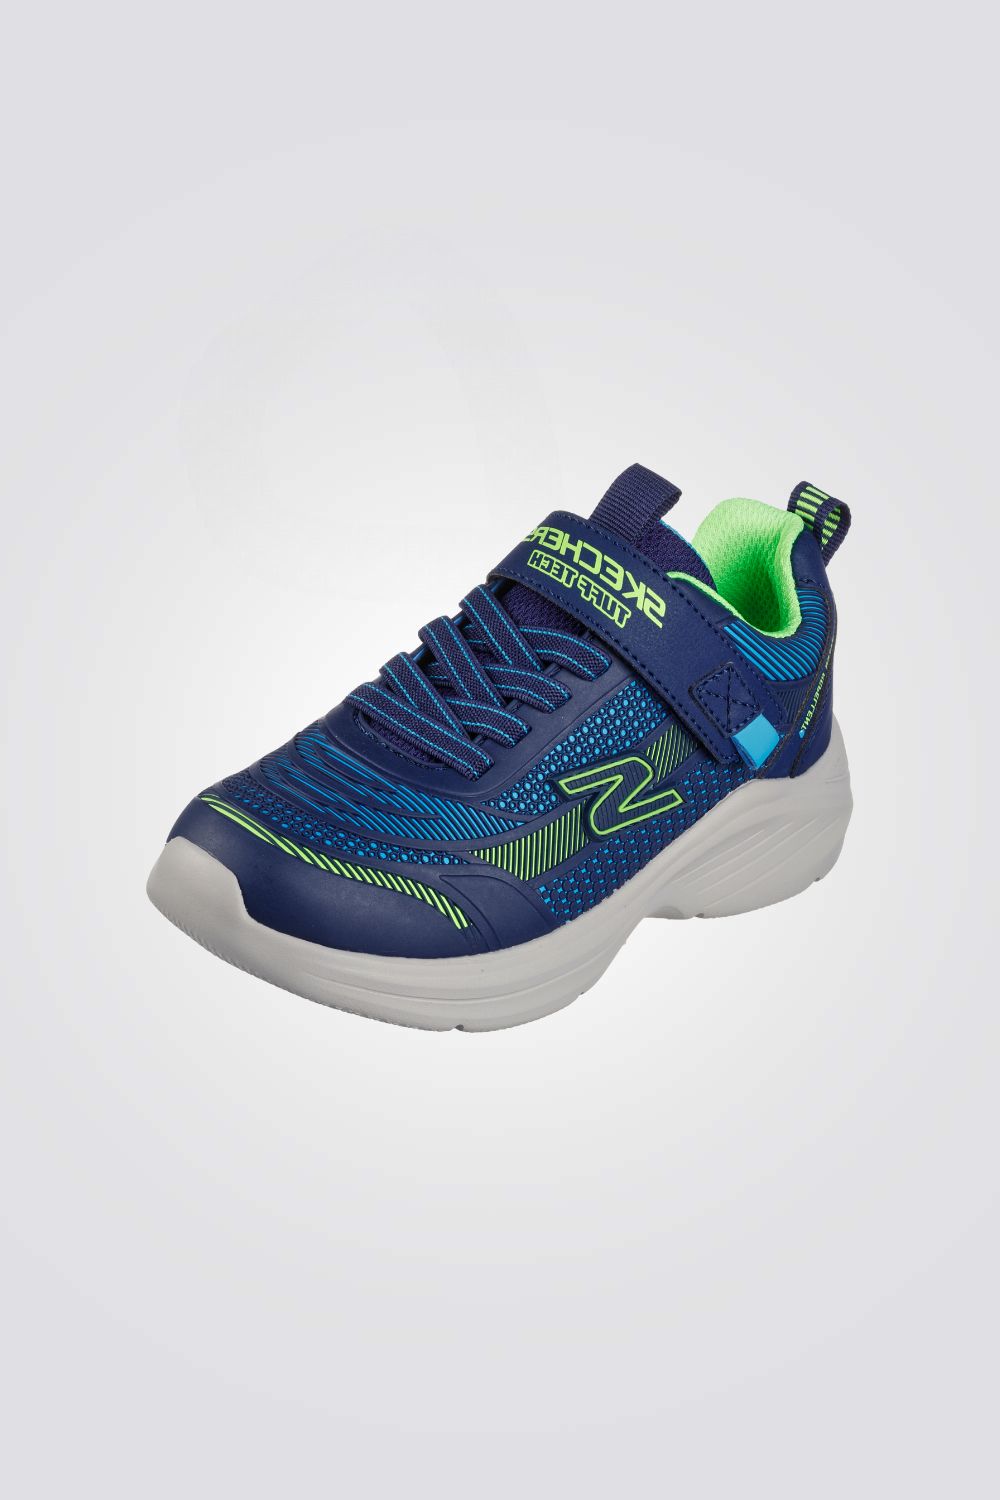 נעלי ספורט לילדים Hyper-Blitz בצבע כחול וירוק